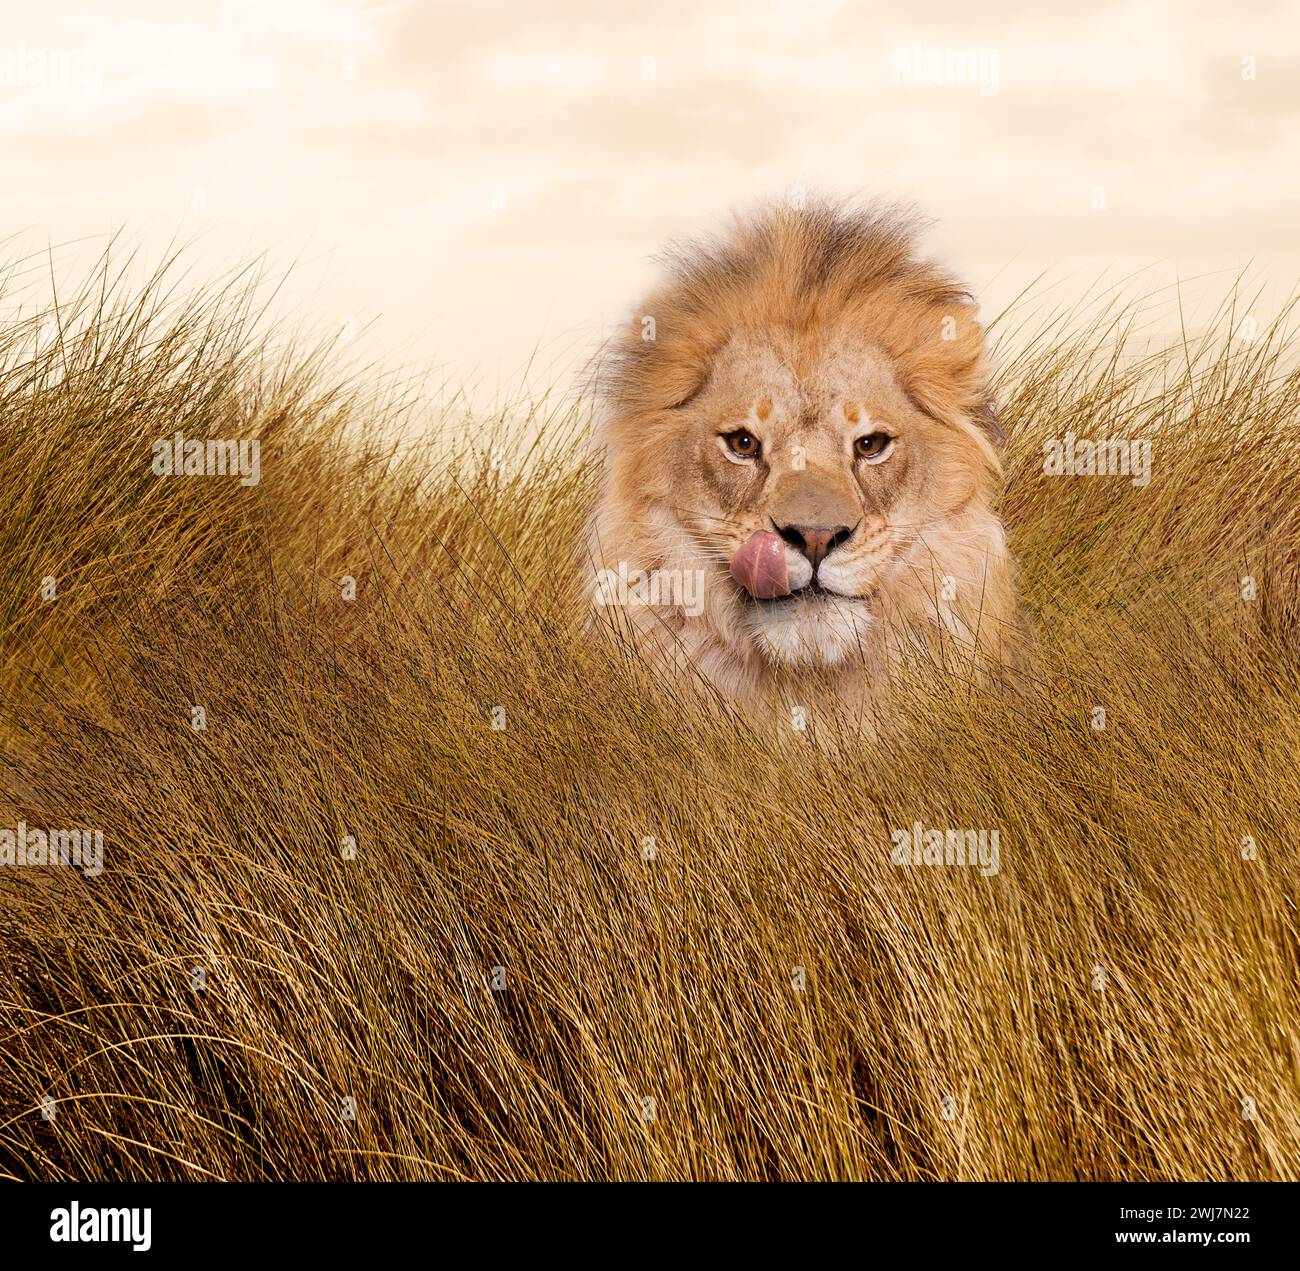 Un lion affamé lèche ses lèvres dans les hautes herbes dans une interprétation humoristique des métaphores du lion telles que le danger, le risque et la puissance. Banque D'Images